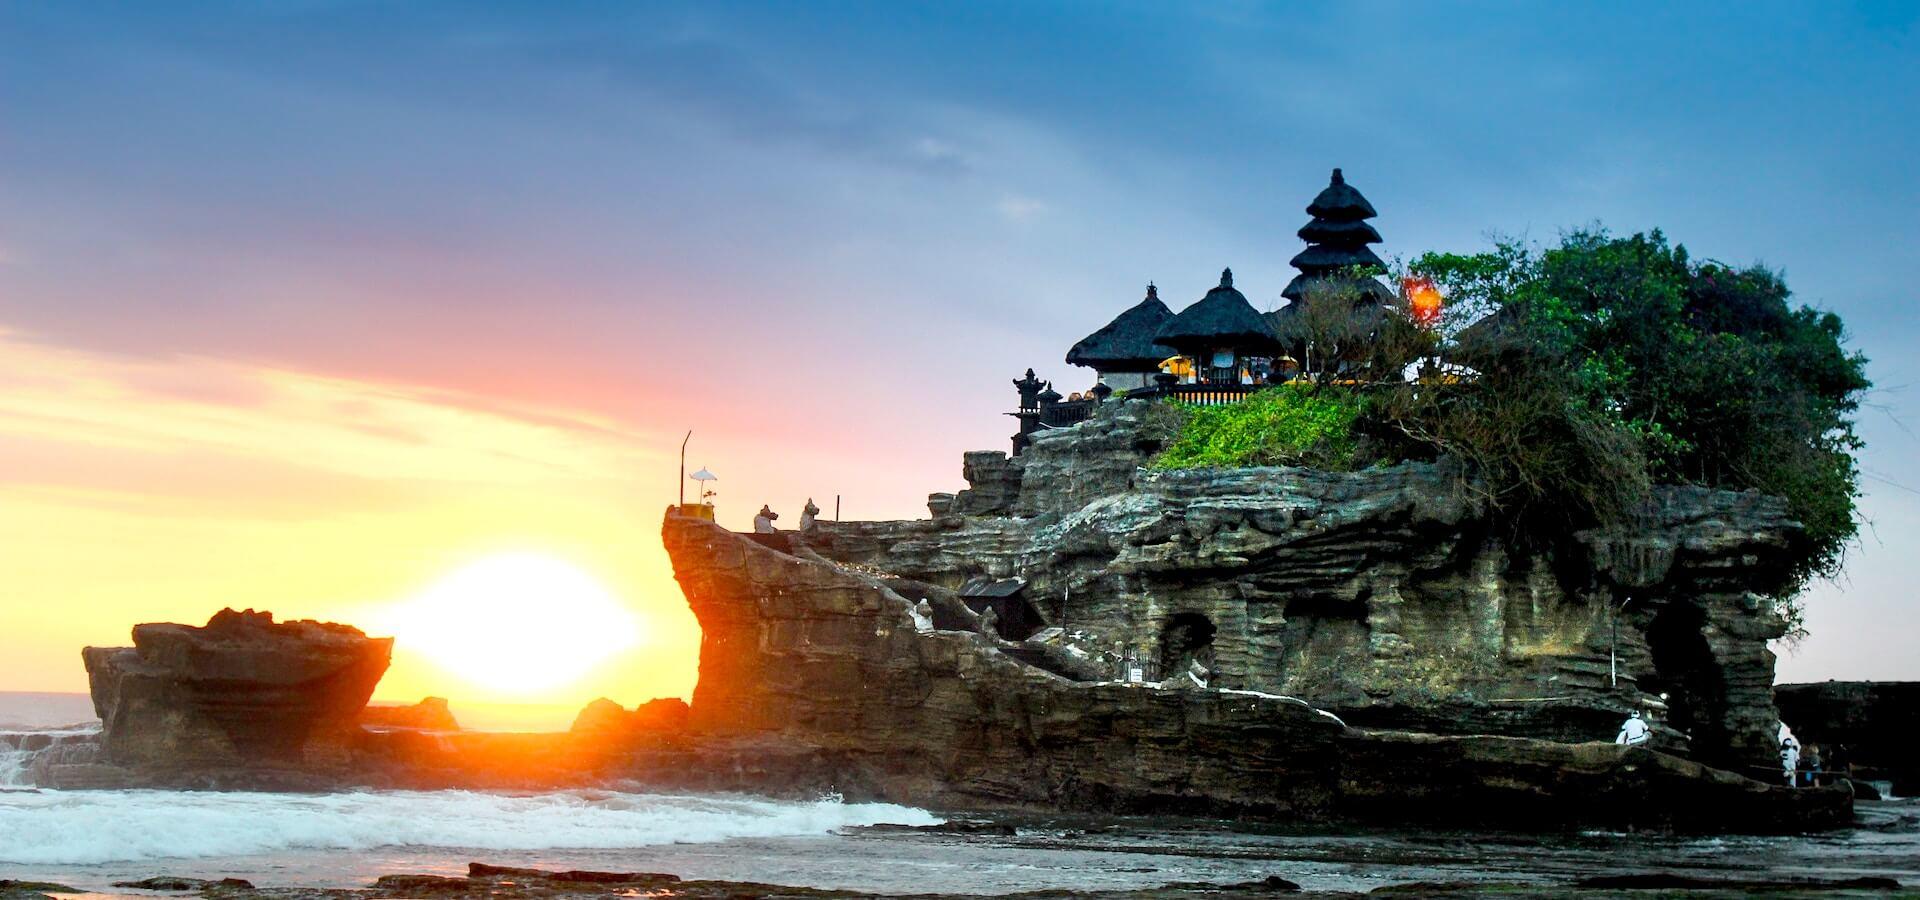 Günstige Flüge nach Bali finden